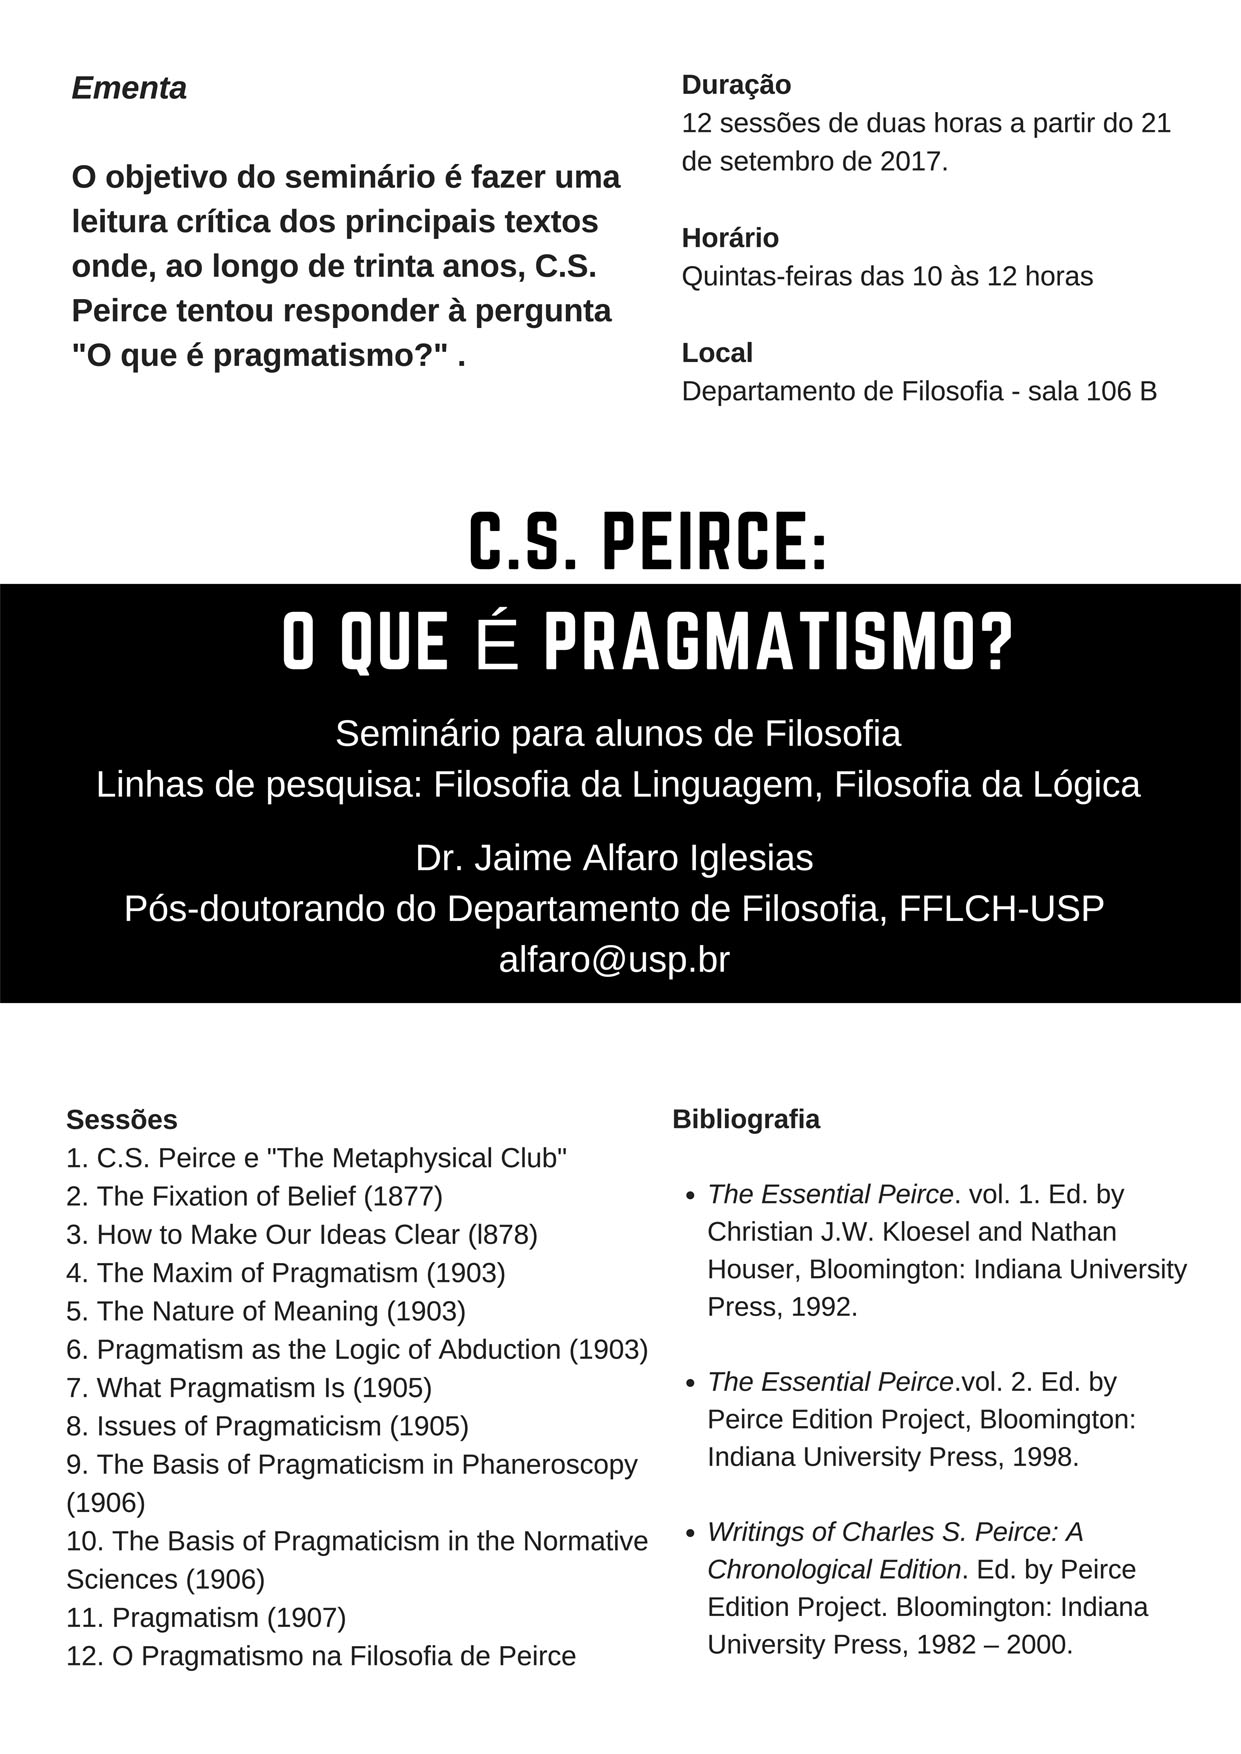 2017_seminario_o_que_e_pragmatismo.jpg